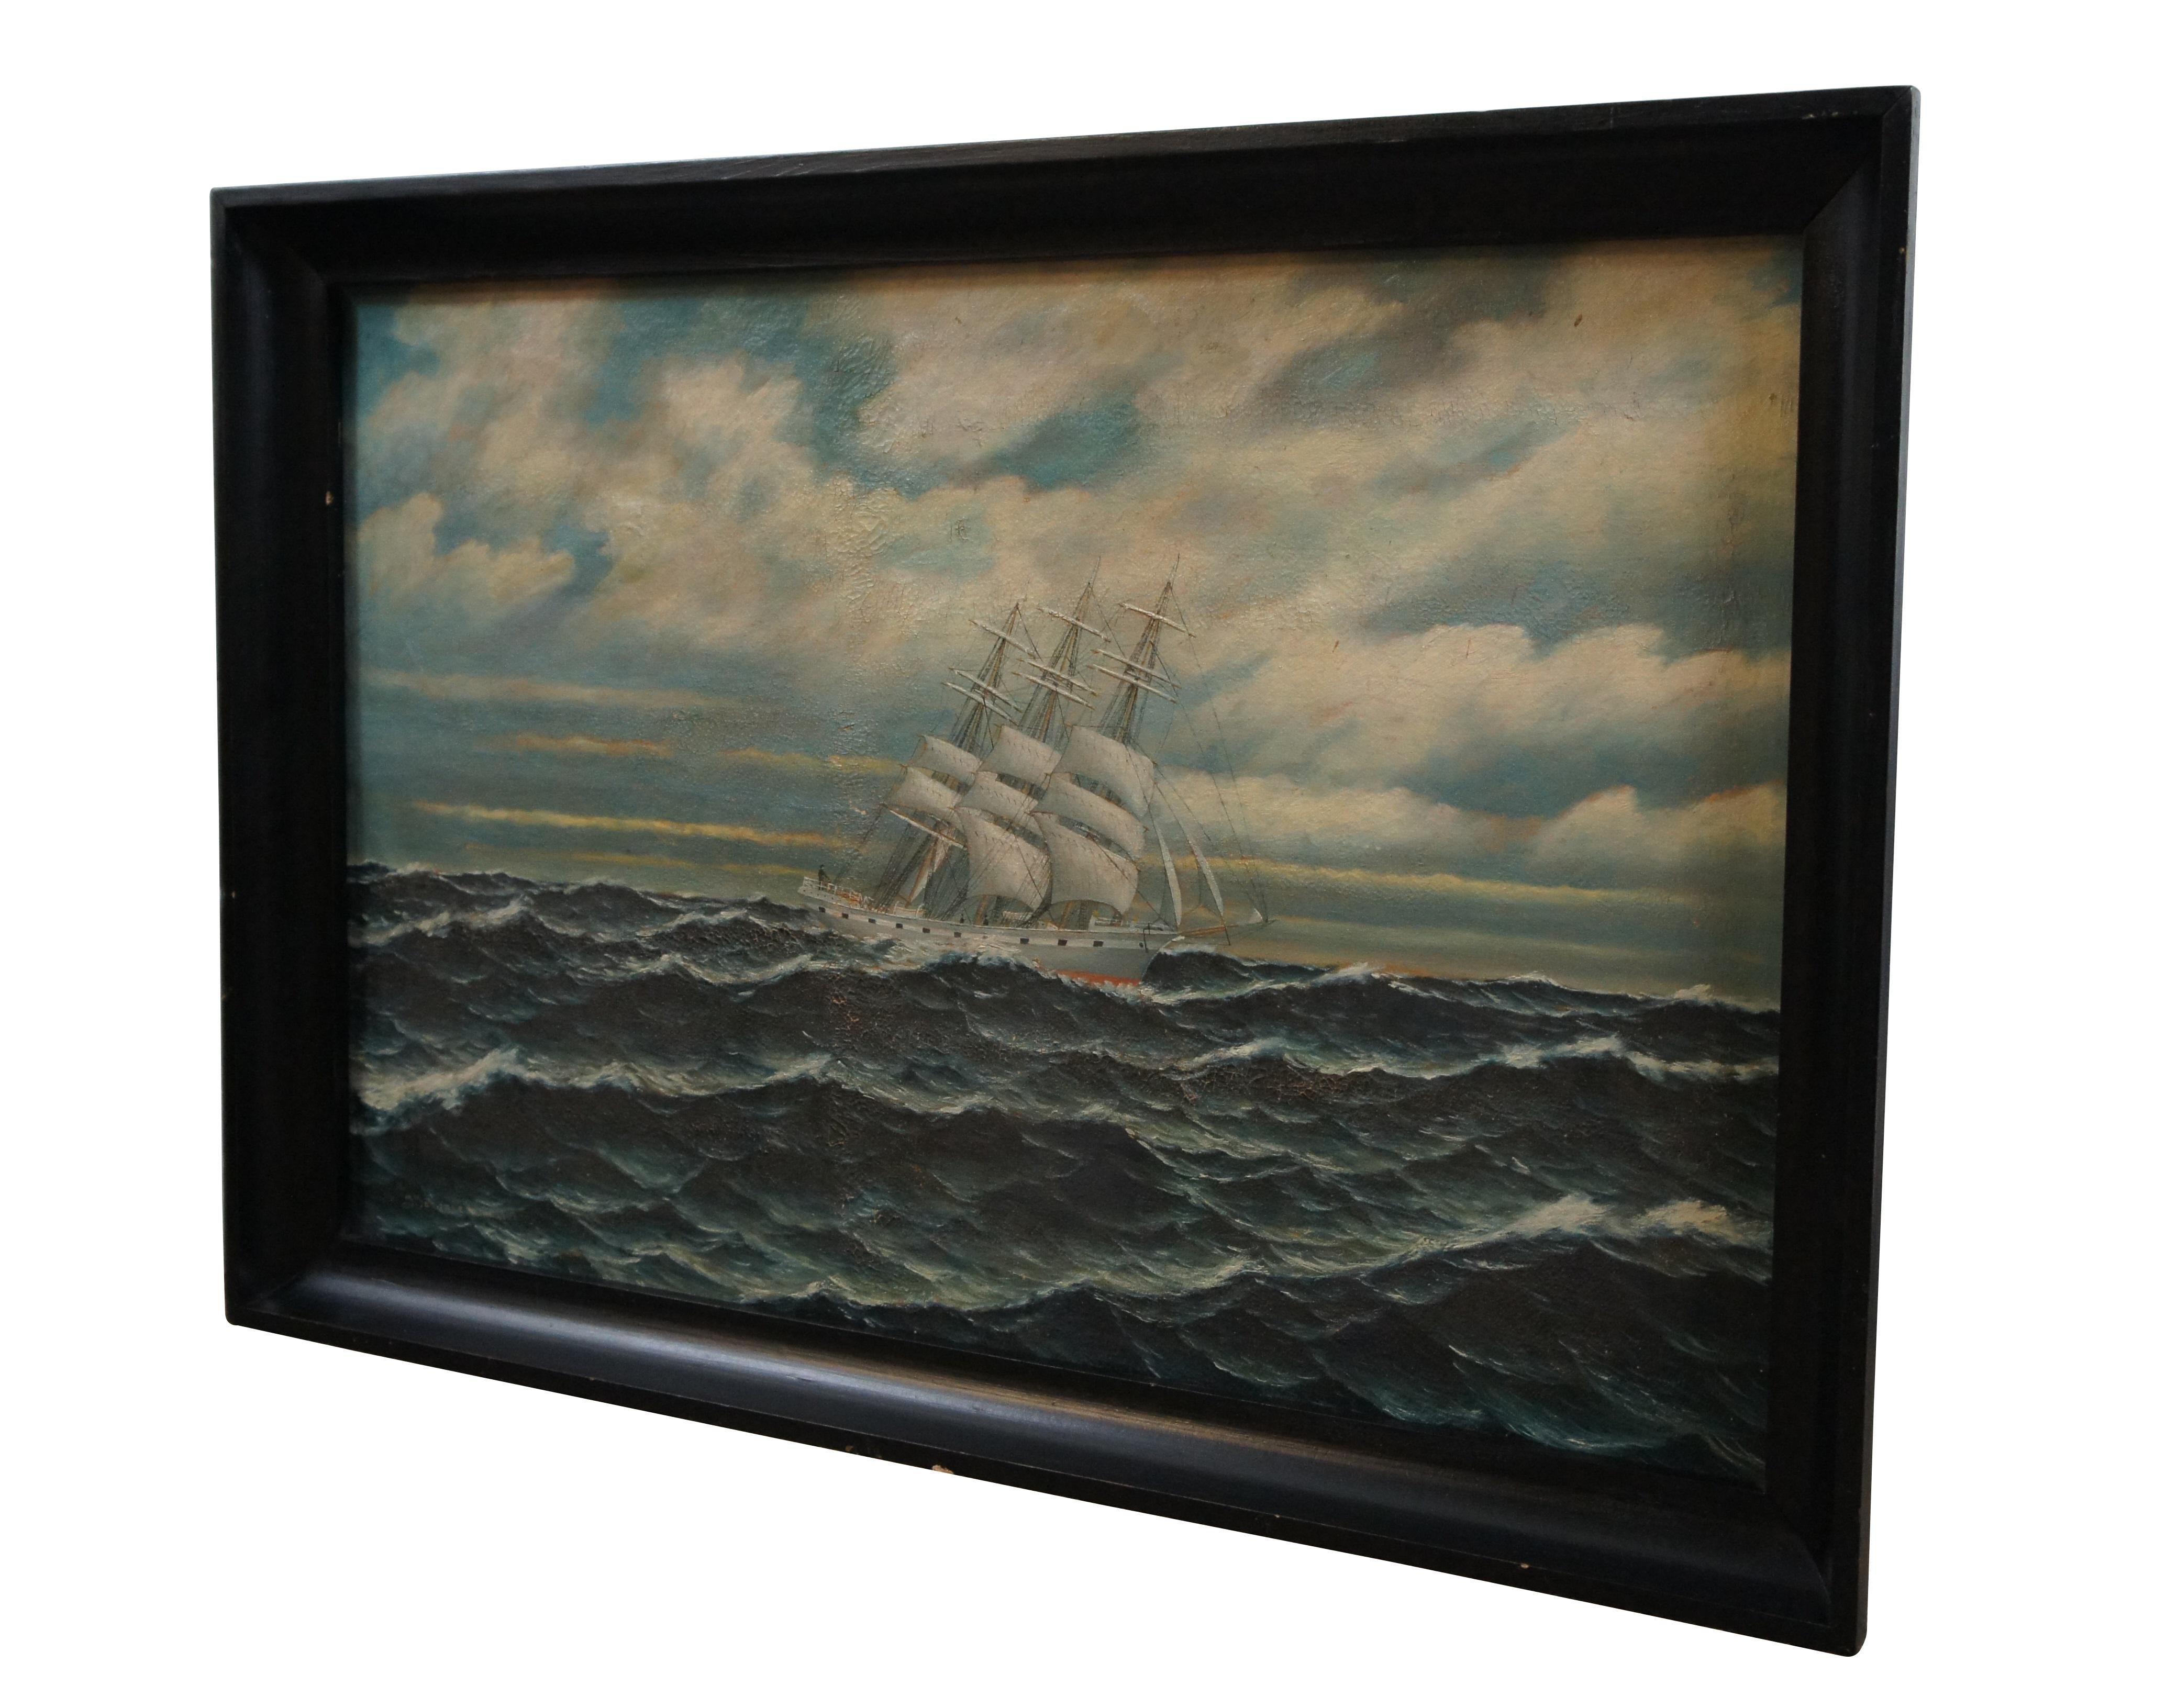 Ancienne peinture à l'huile sur toile de l'école hollandaise représentant un yacht / clipper sur une mer agitée. Signé dans le coin inférieur gauche J. Johannesen (Y. Yohannsen) - 1917.

Dimensions :
36